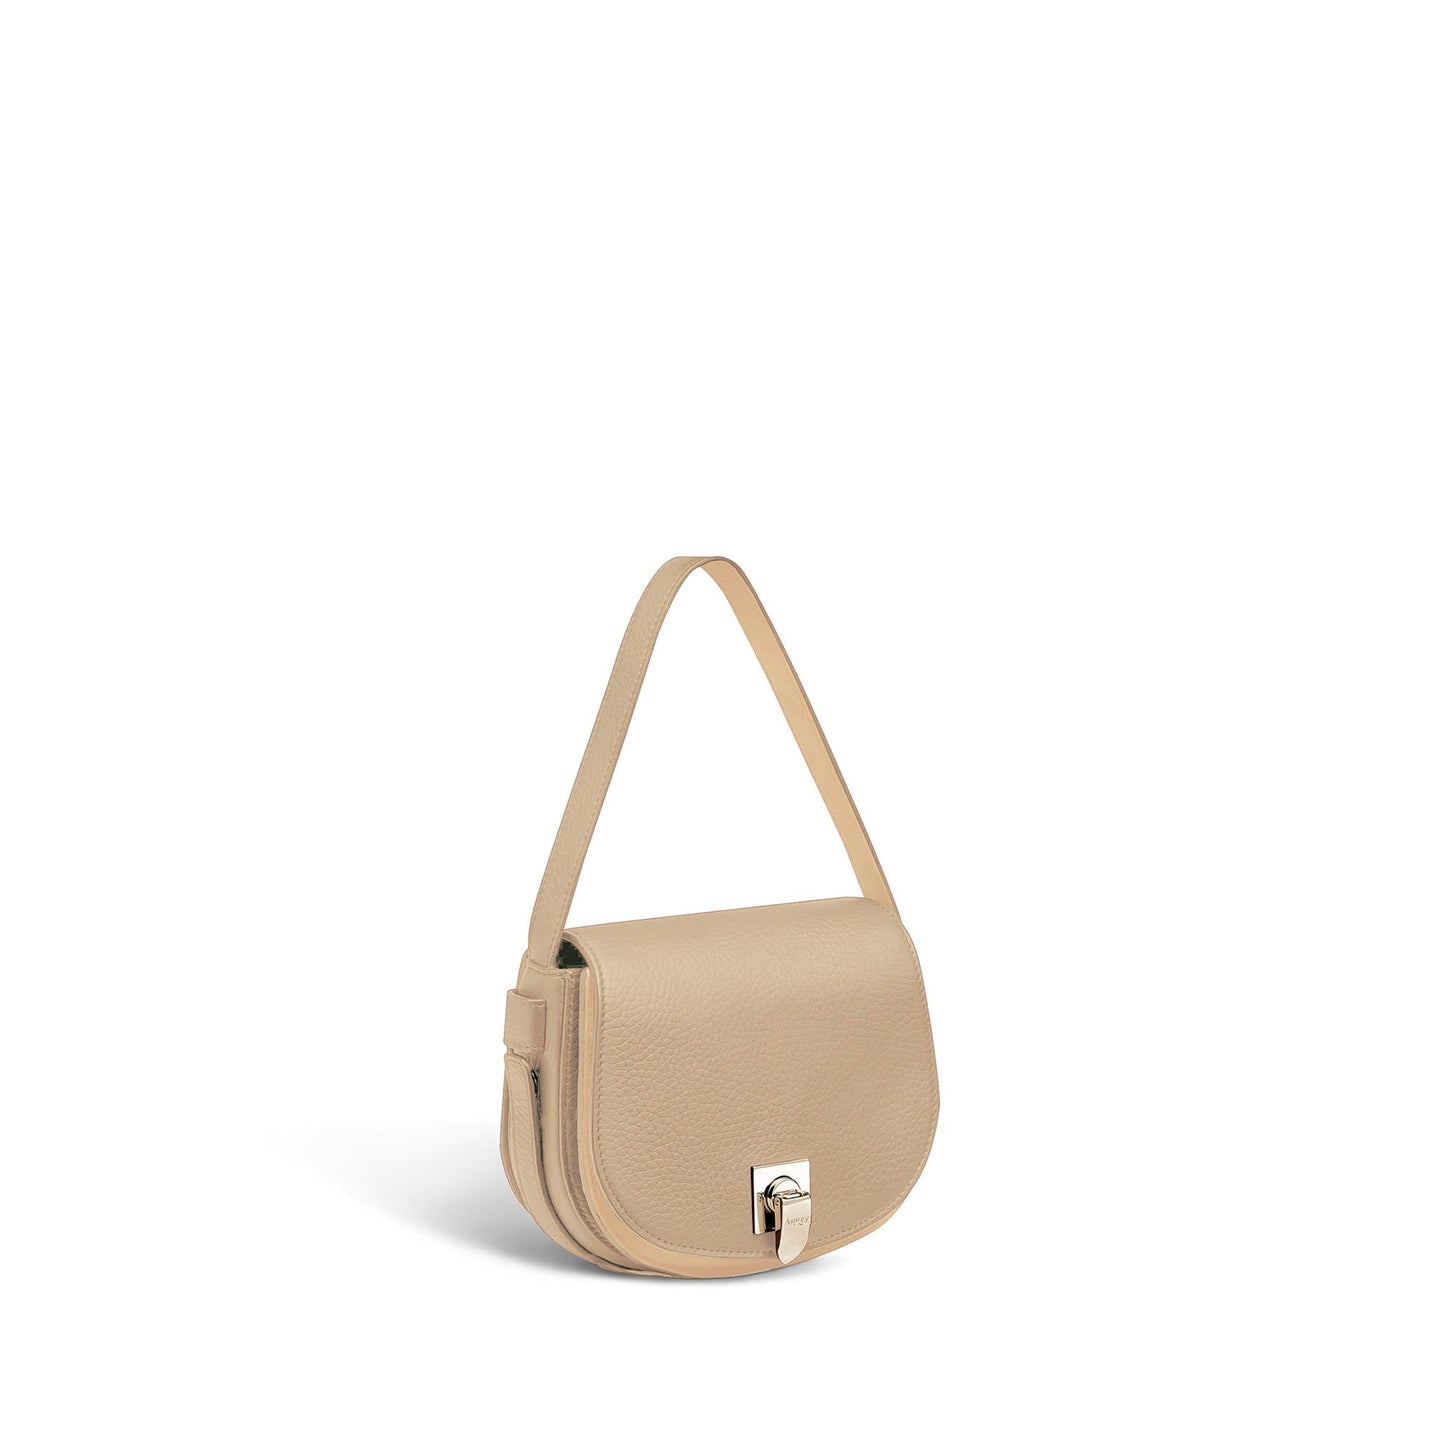 Polo Mini Handbag in Soft Grain Leather